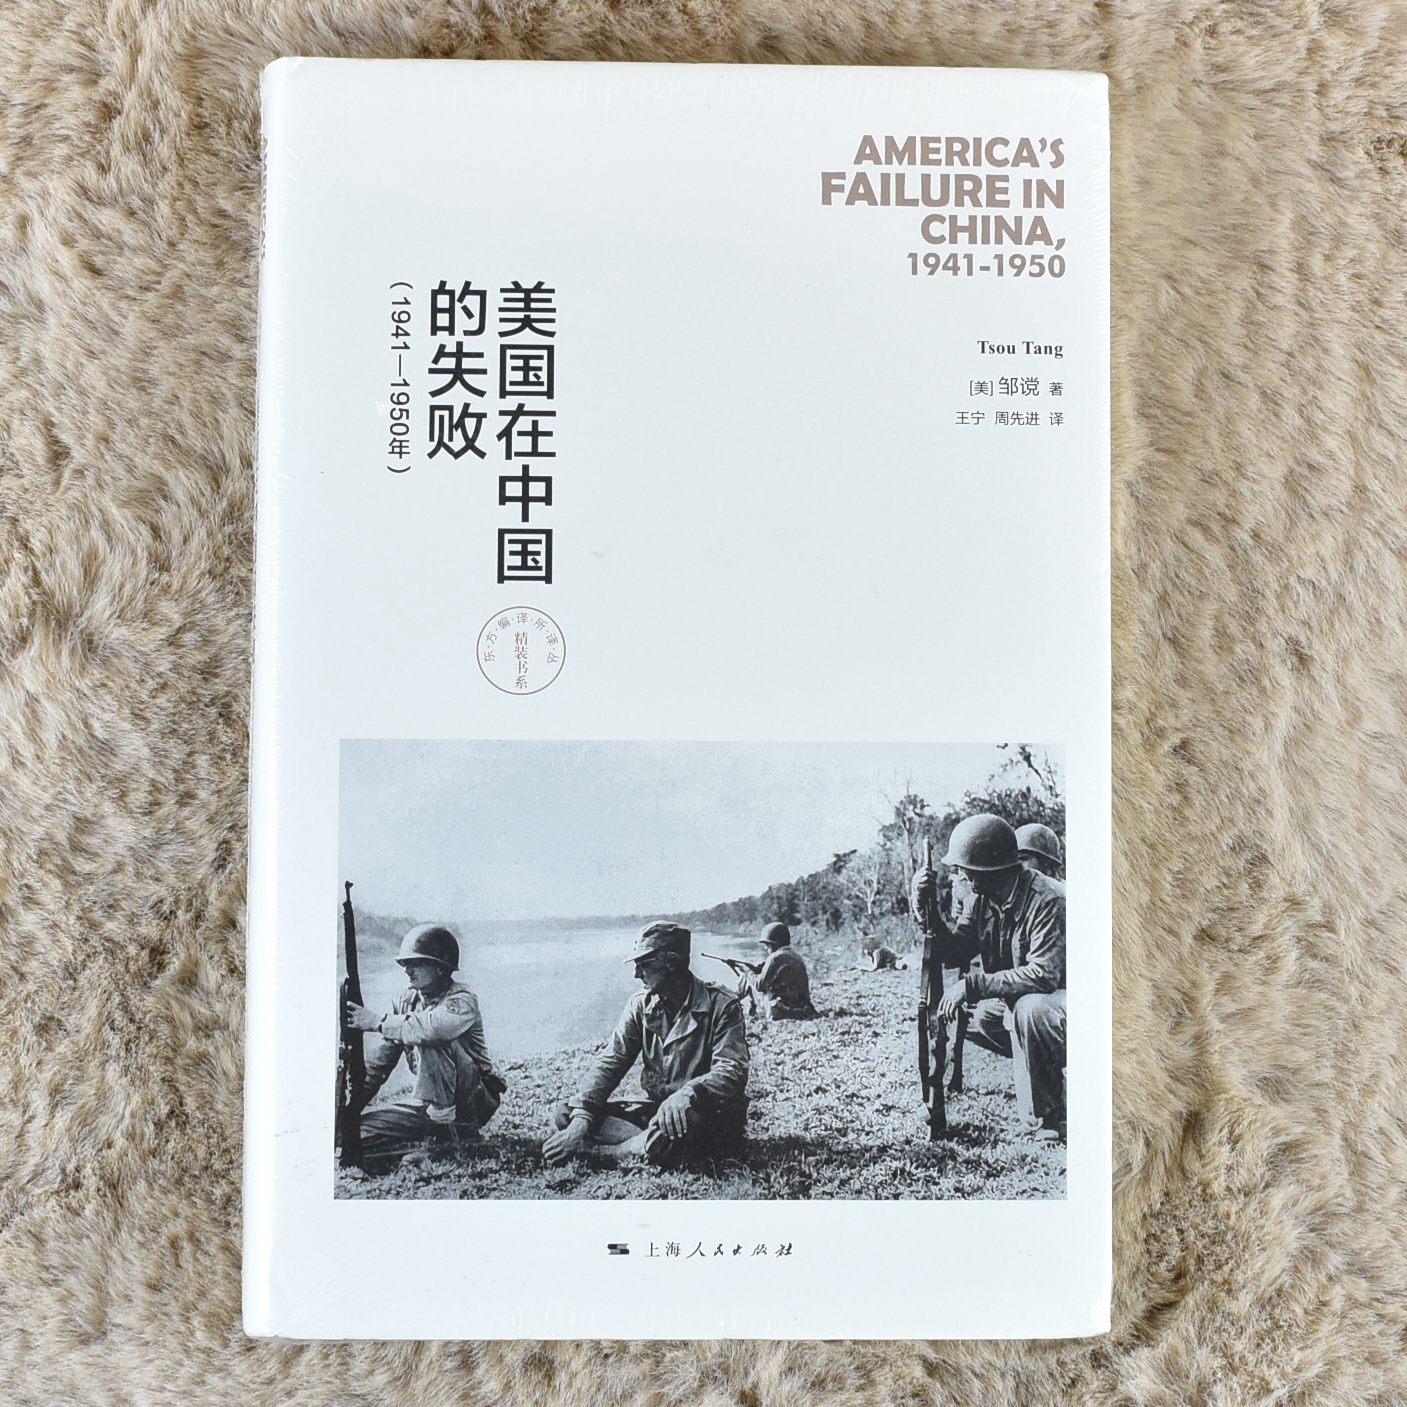 正版 美国在中国的失败(1941-1950年)作者: 邹谠 出版社: 上海人民出版社9787208139992